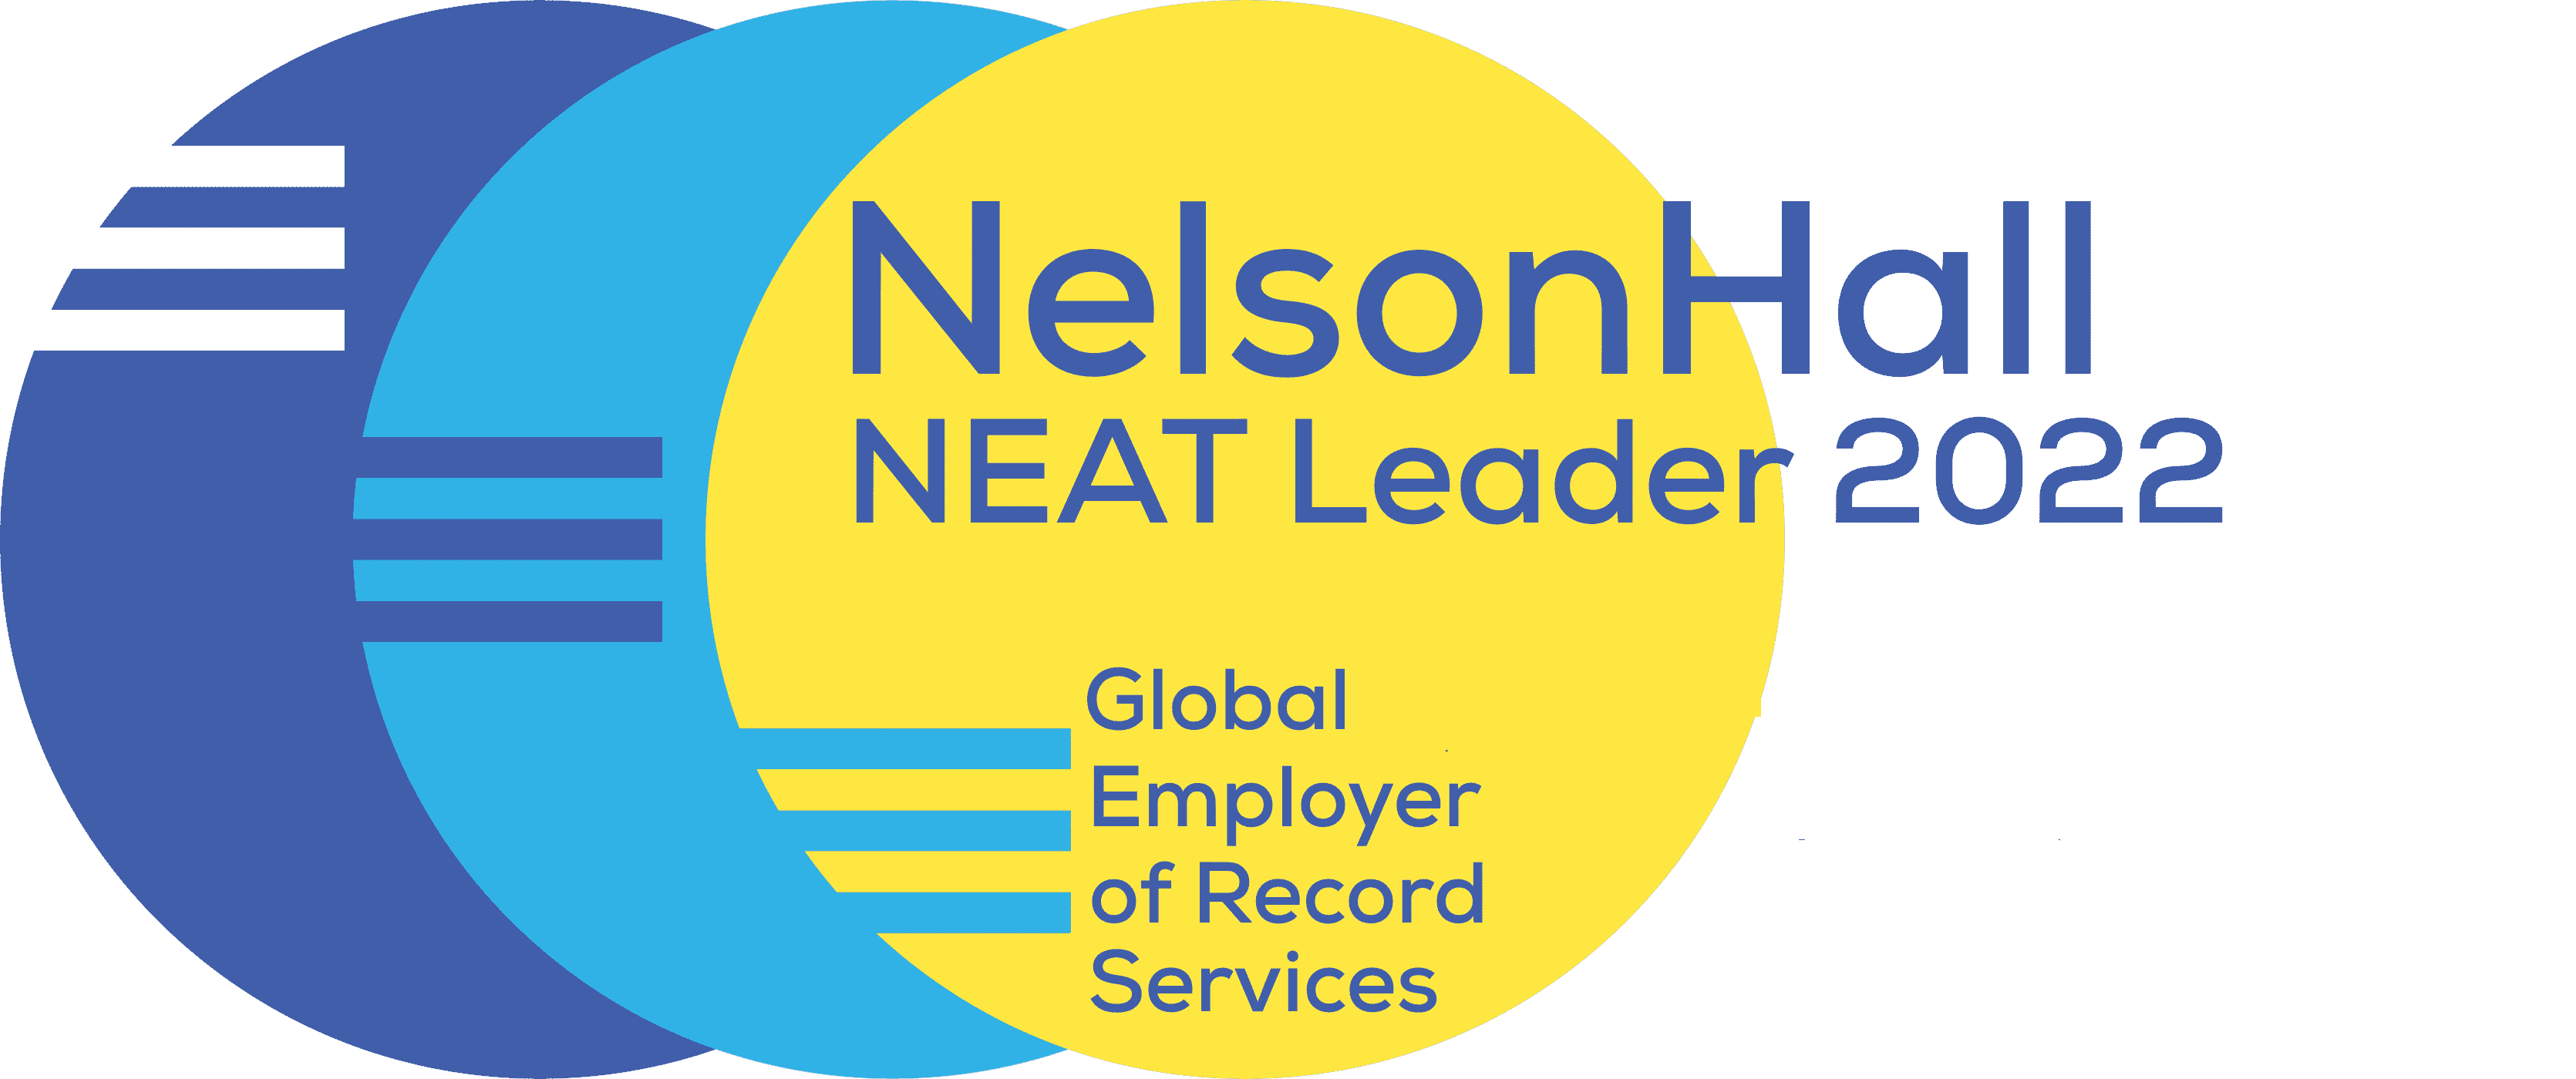 NelsonHall - Trasforma attraverso le conoscenze